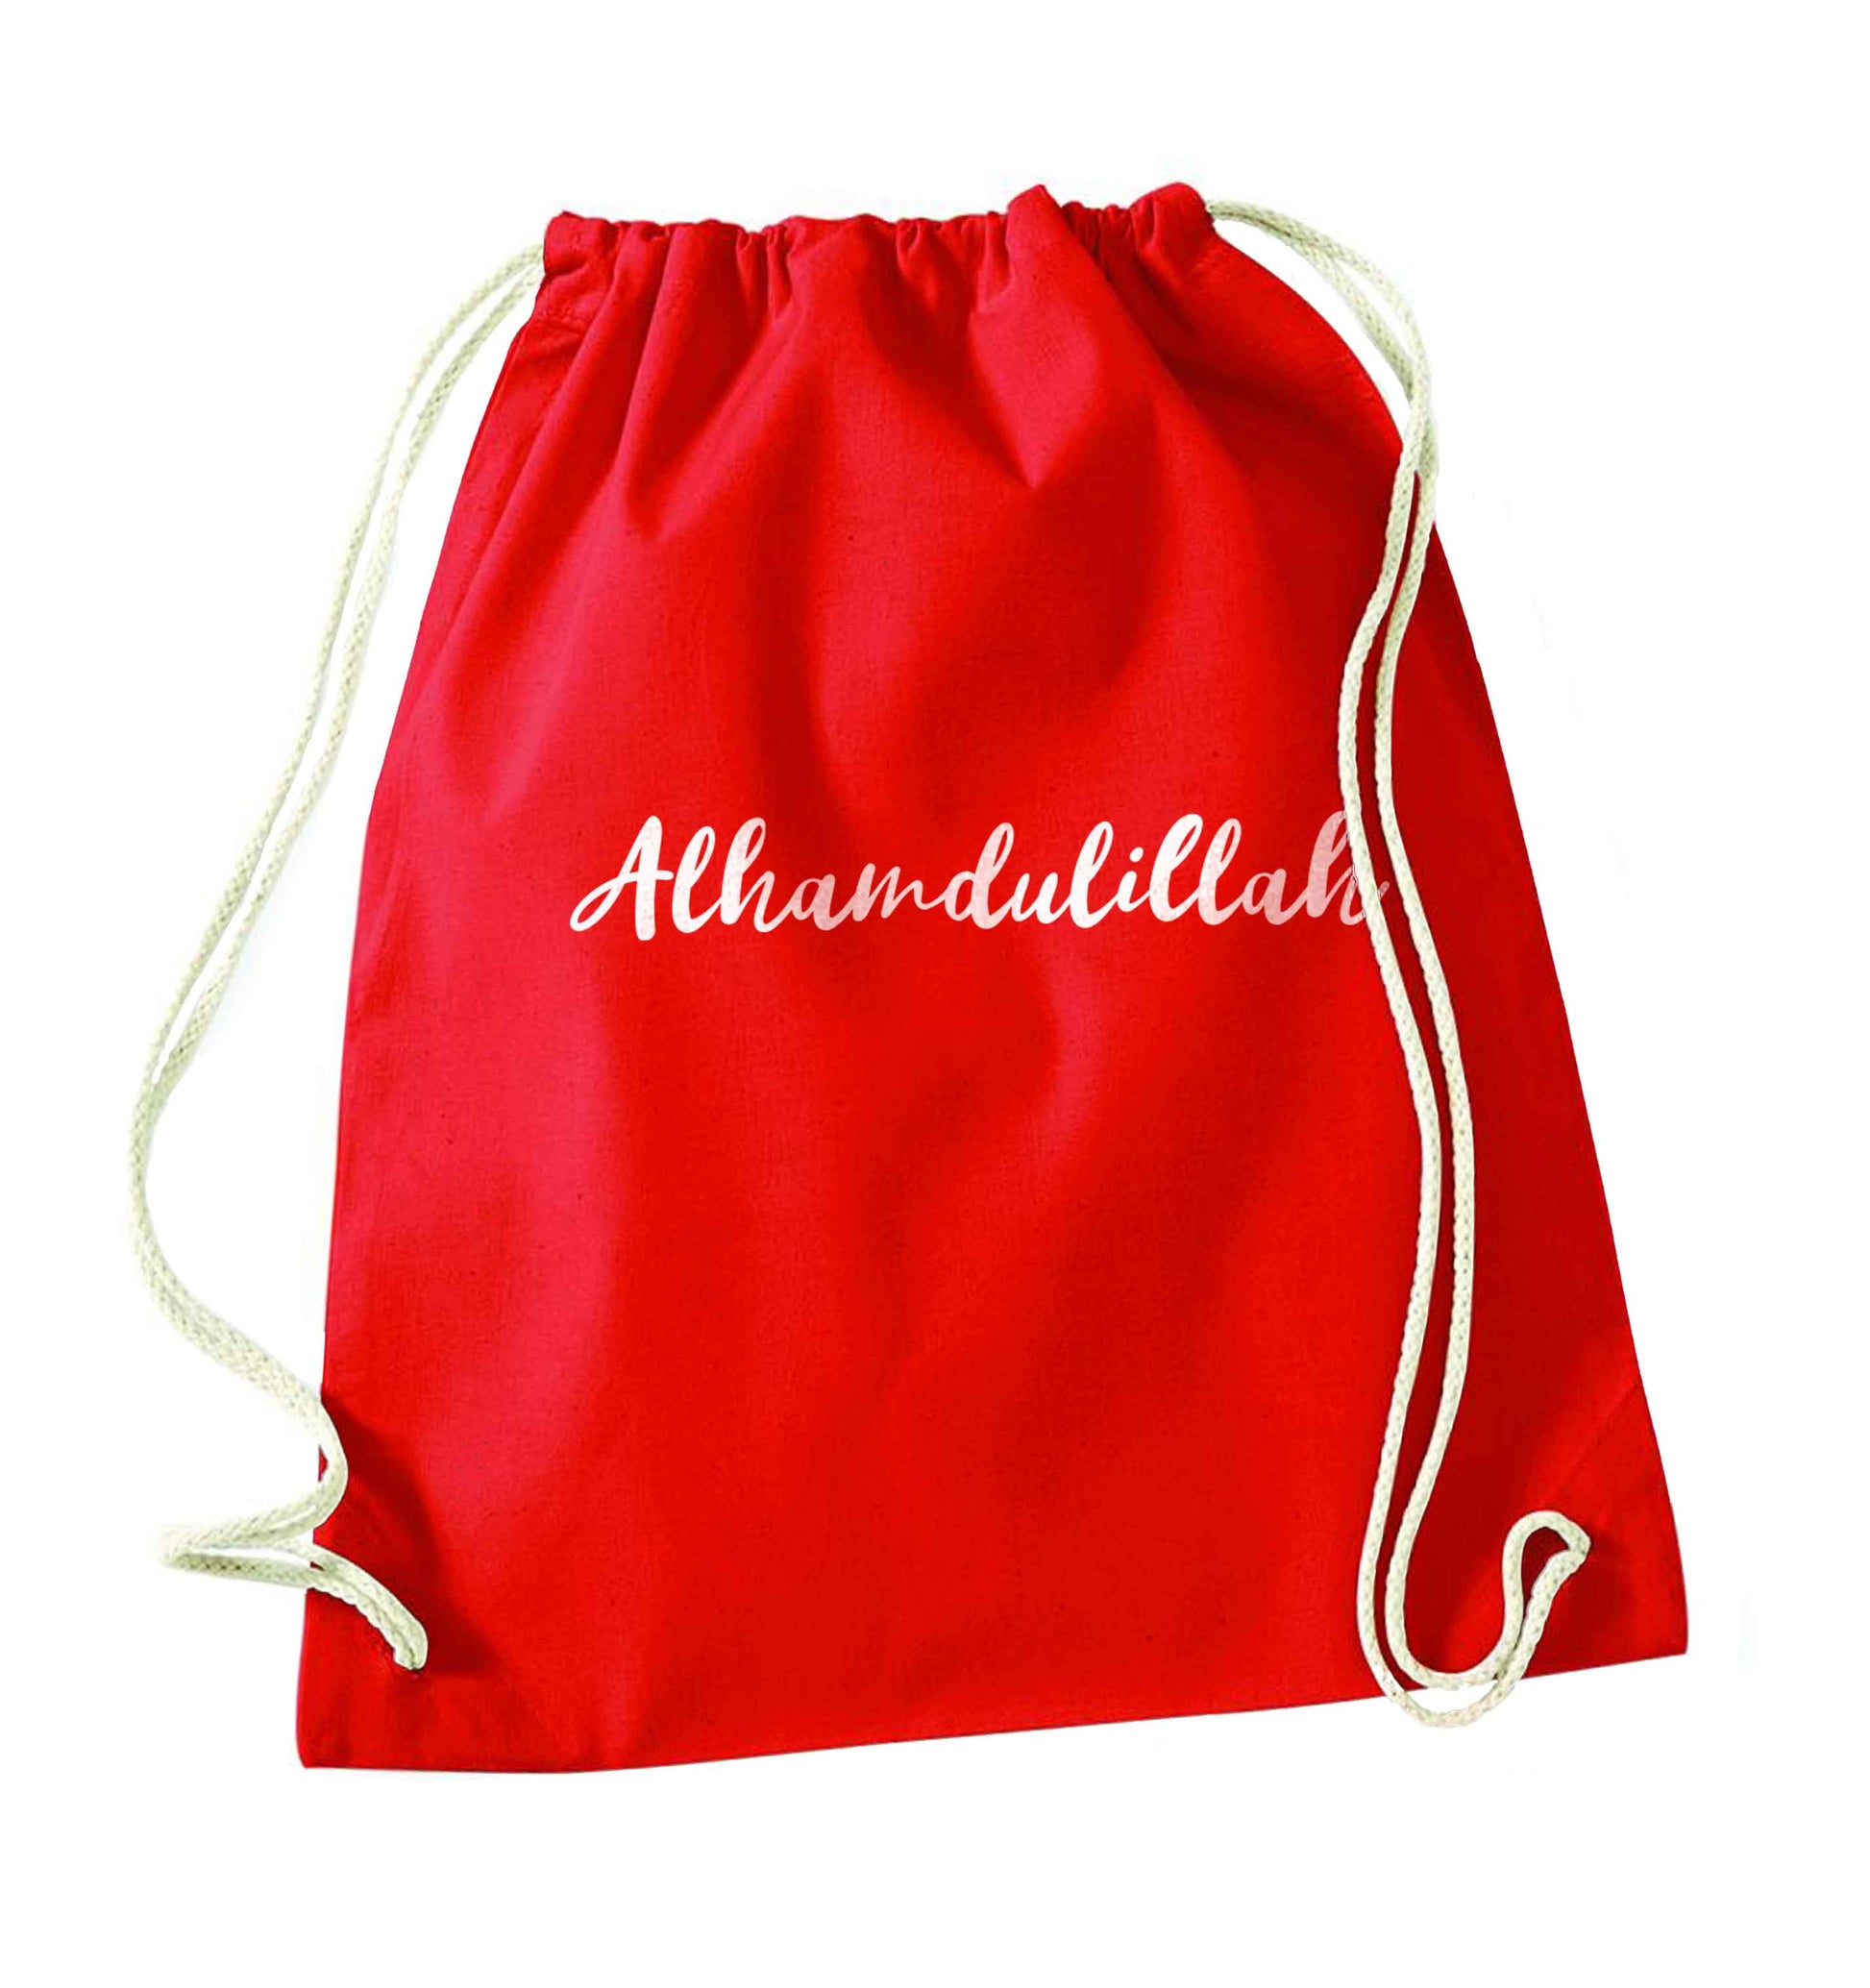 alhamdulillah red drawstring bag 